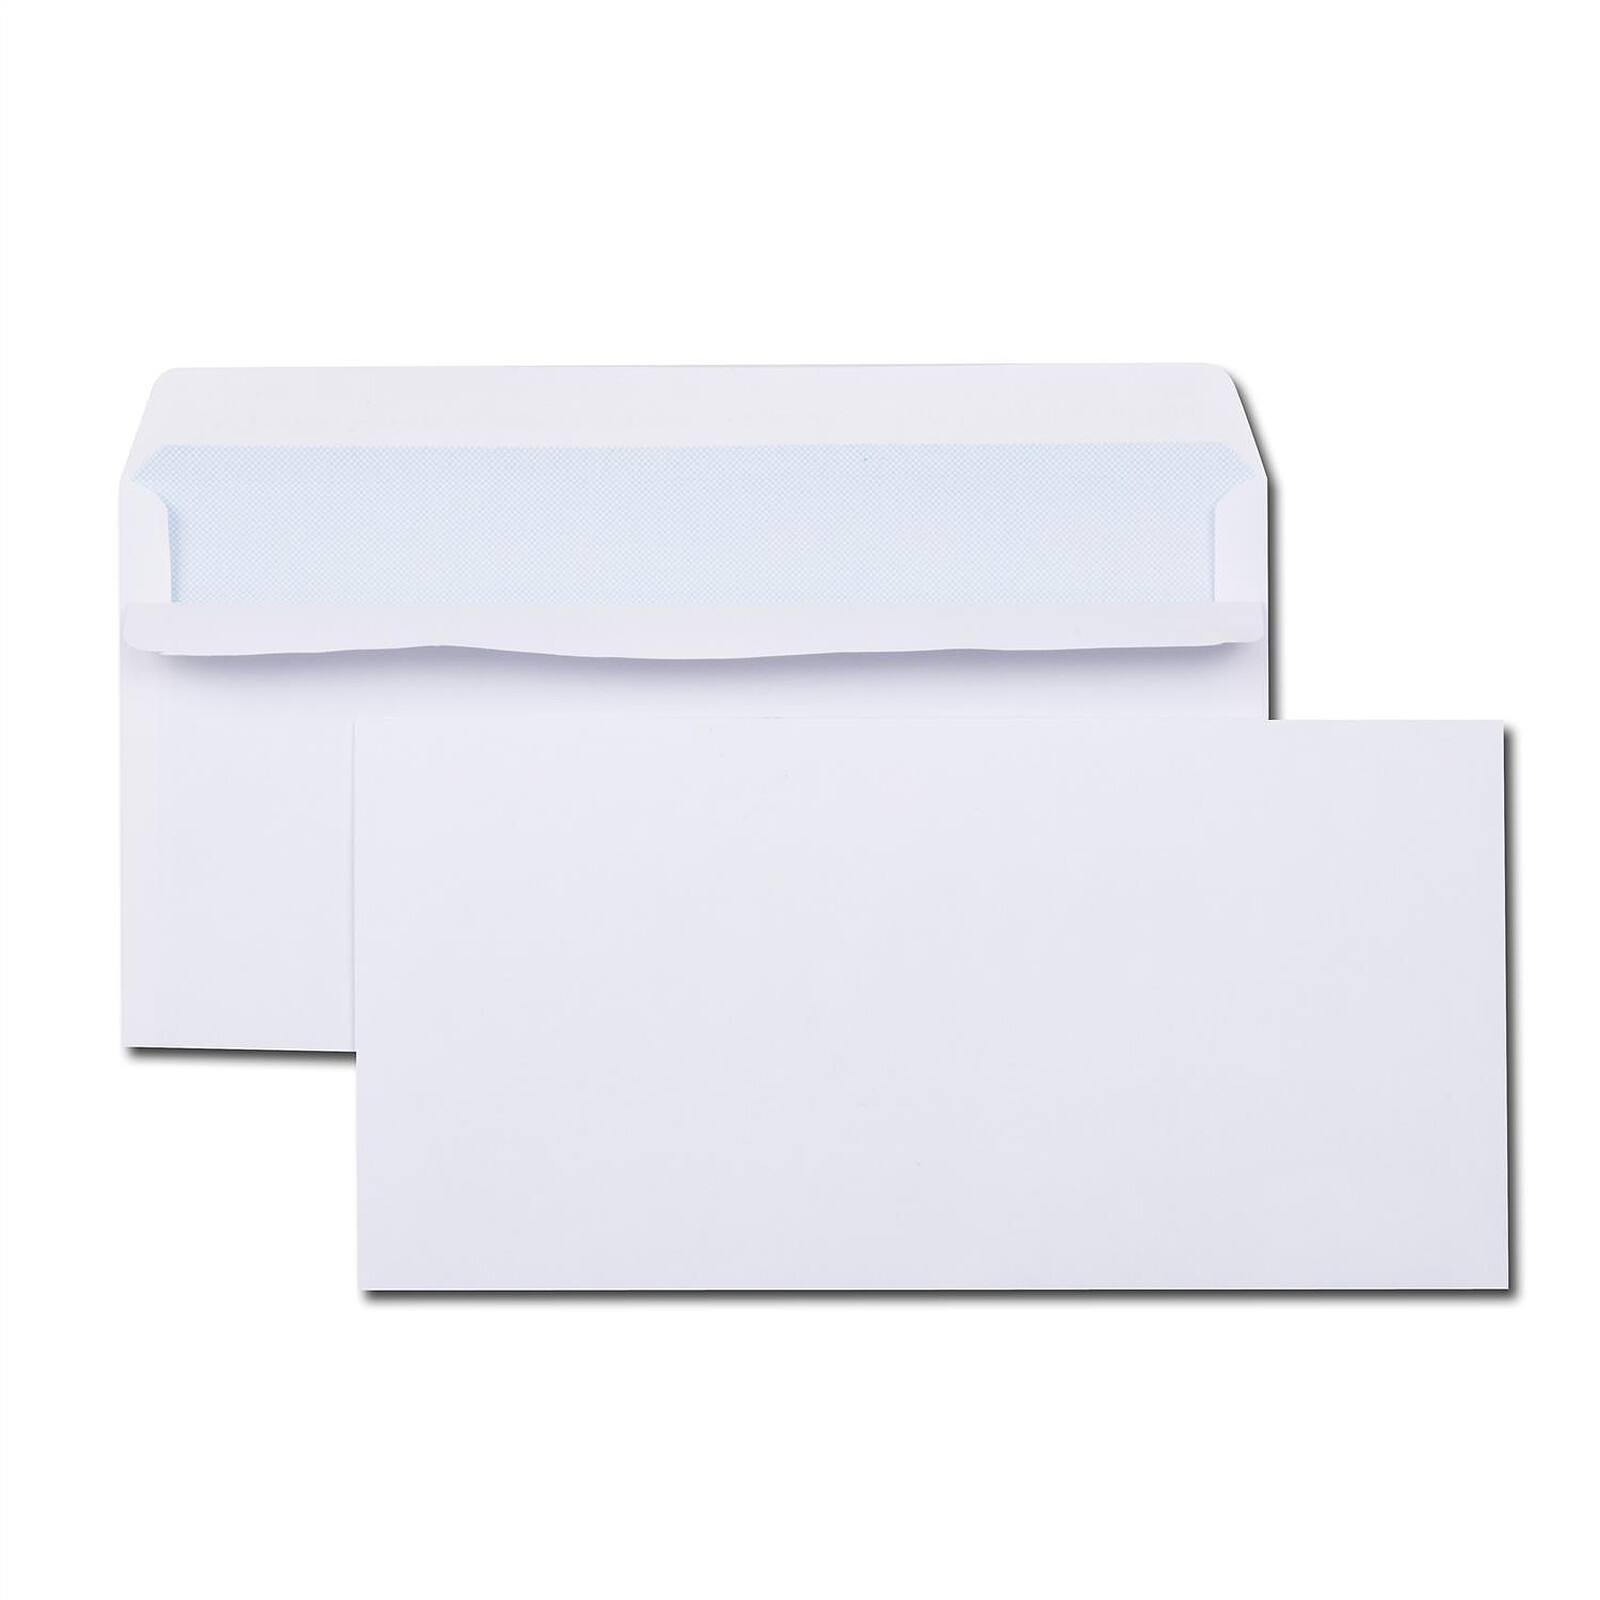 Paquet de 100 enveloppes blanches DL 110x220 80 g/m² bande de protection 